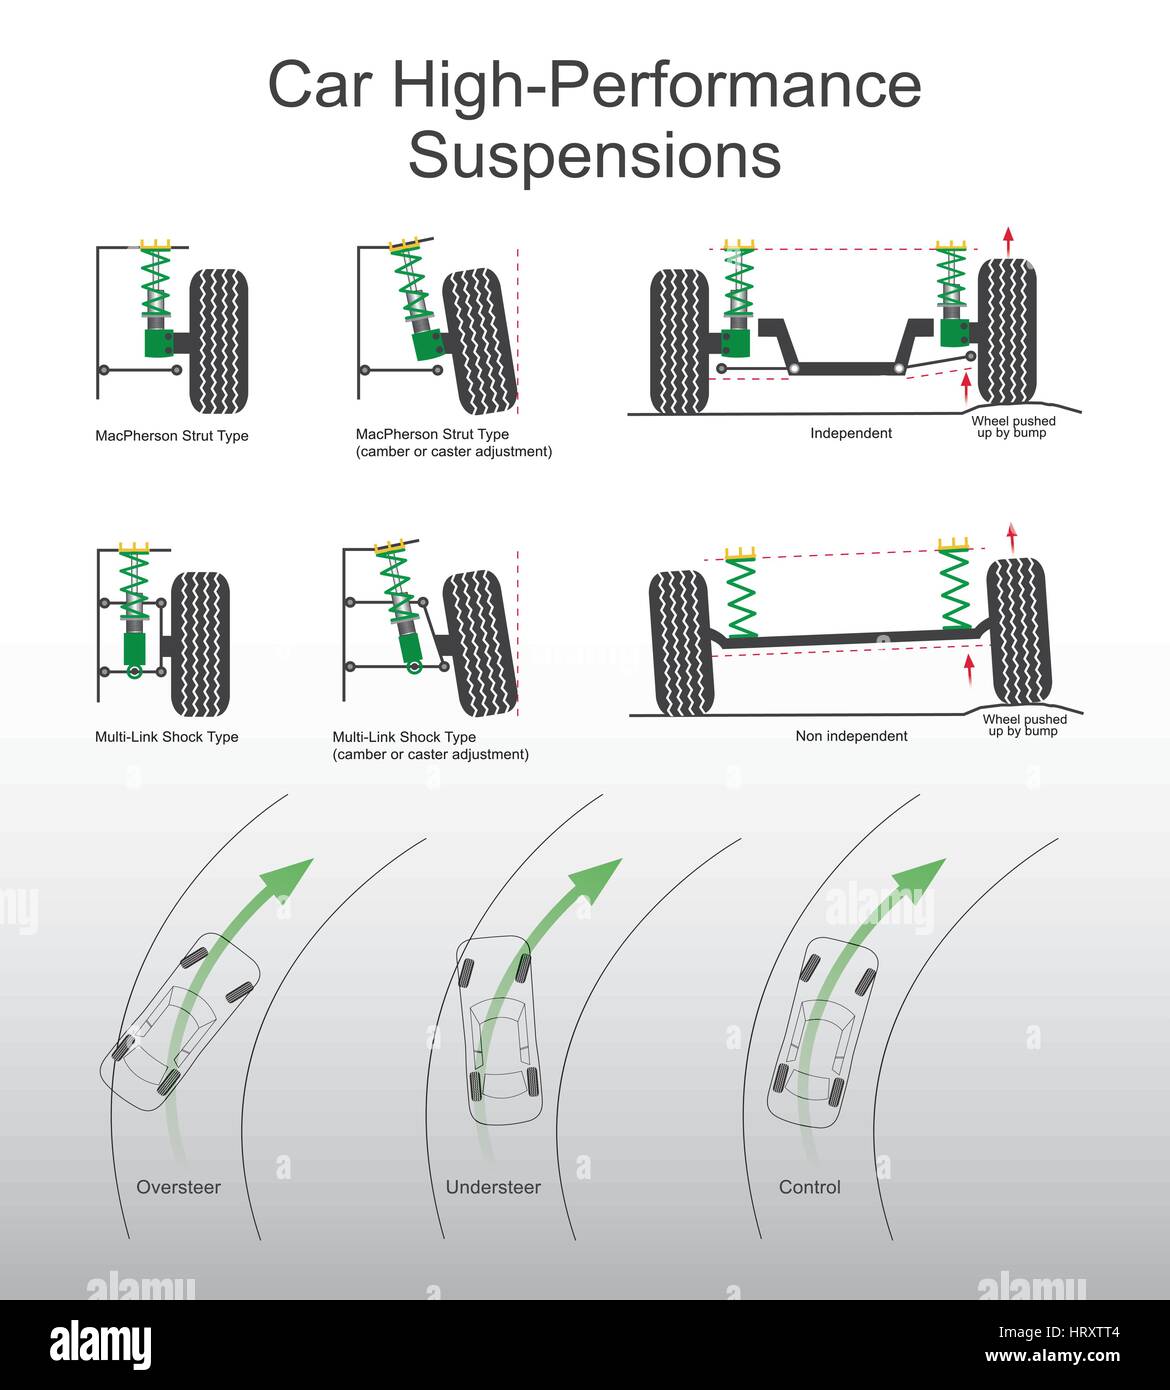 La sospensione è il sistema di pneumatici, Pneumatici aria, molle, ammortizzatori e tiranteria che collega un veicolo a ruote e consente il moto relativo di essere Illustrazione Vettoriale